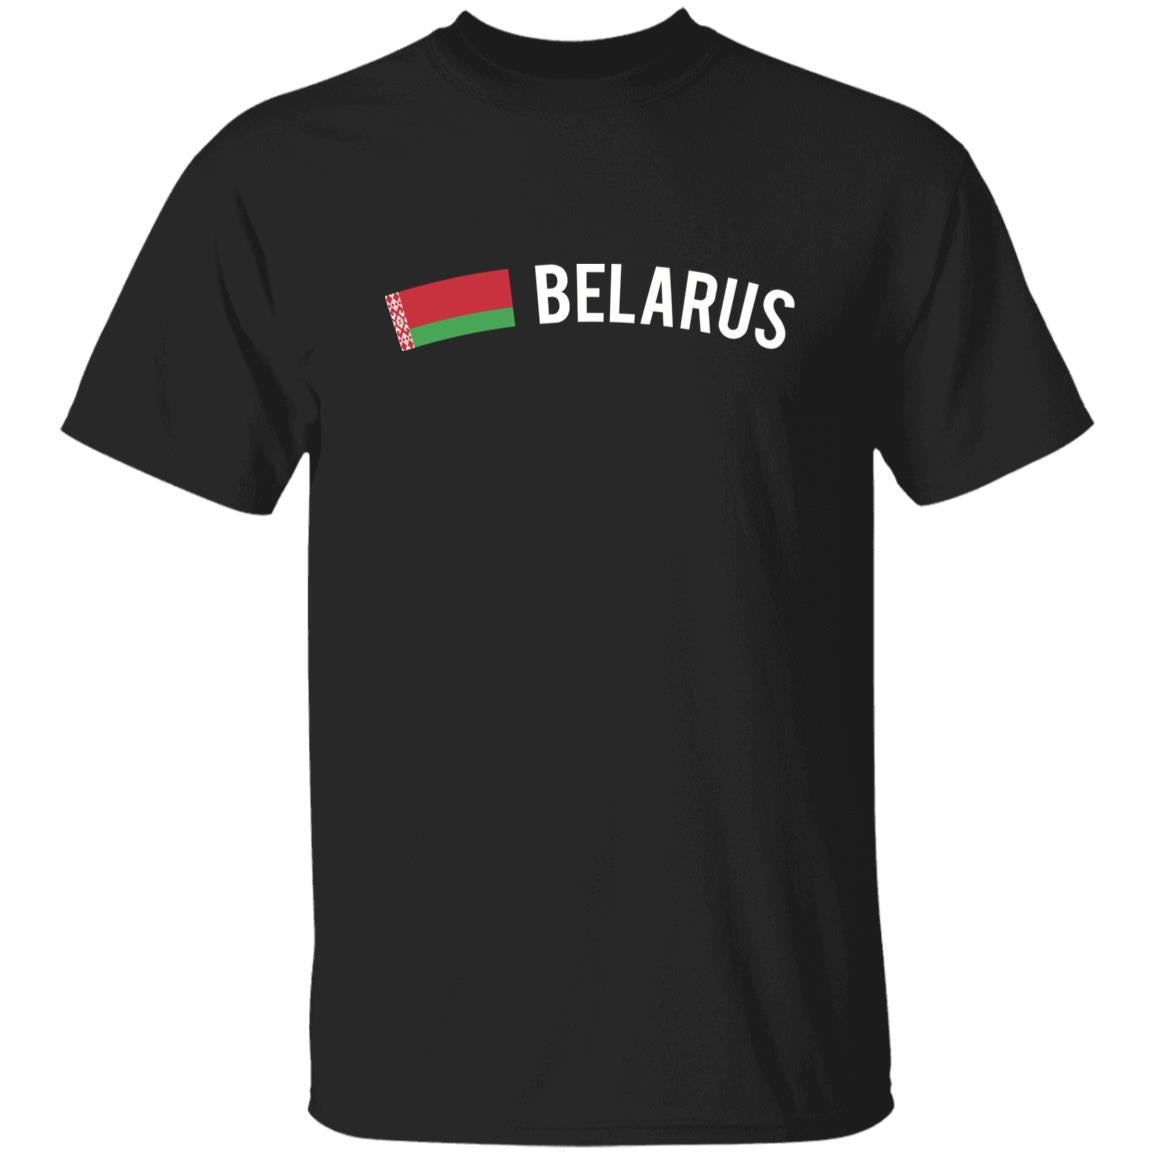 Belarus Unisex T-shirt gift Belarussian flag tee Minsk White Black Dark Heather-Family-Gift-Planet